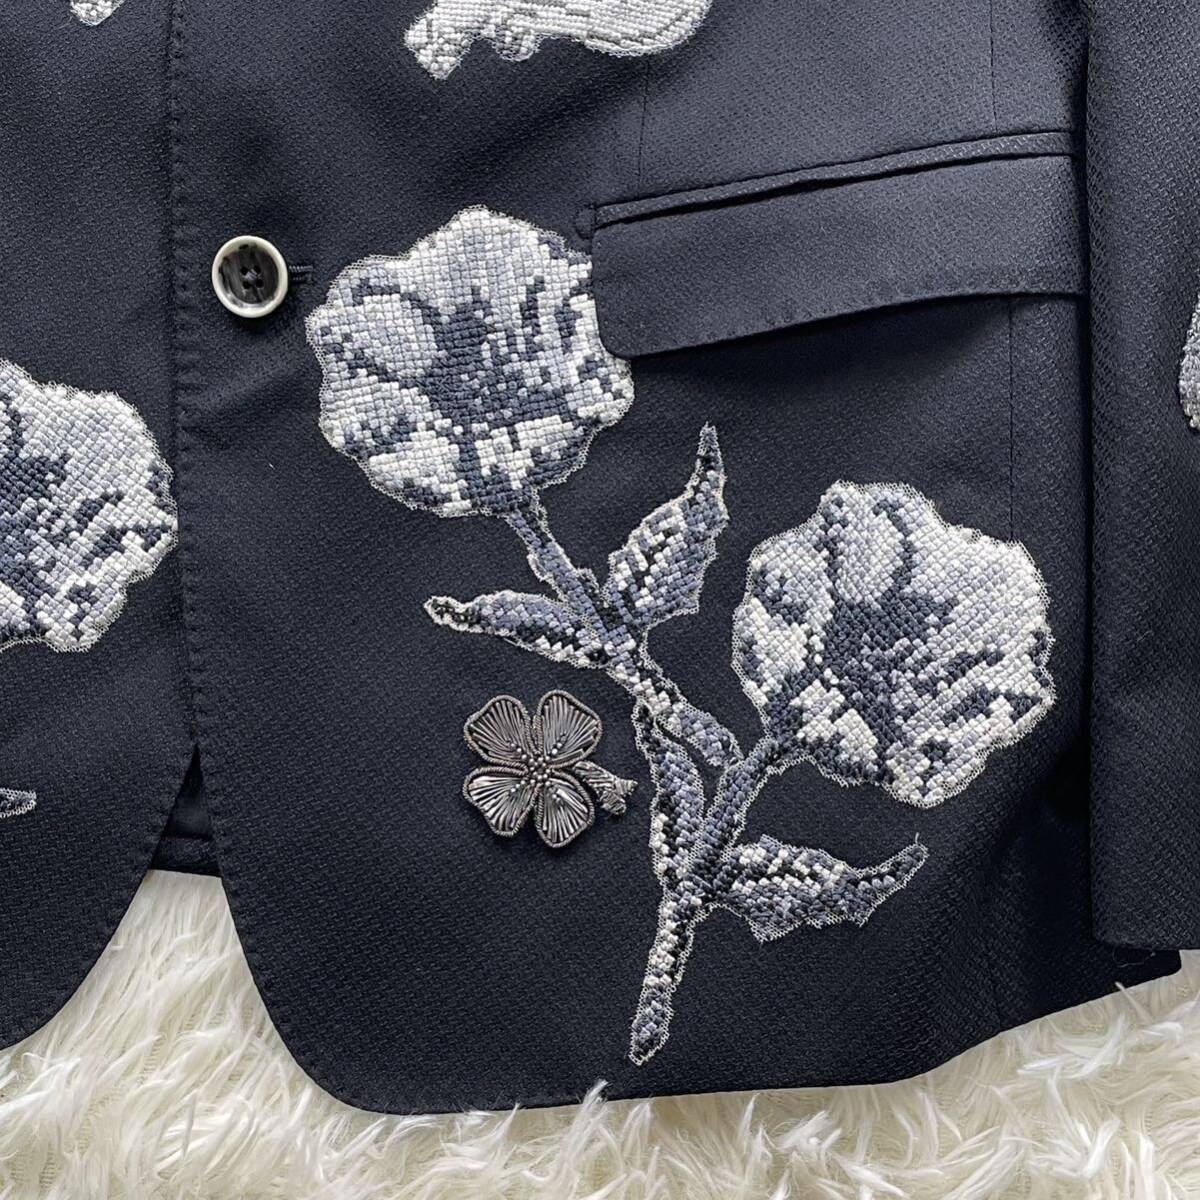 [ обычная цена 80 десять тысяч ] действующий редкий Dolce & Gabbana DOLCE&GABBANA Dolce&Gabbana tailored jacket вышивка ангел Crown .. шелк черный чёрный 